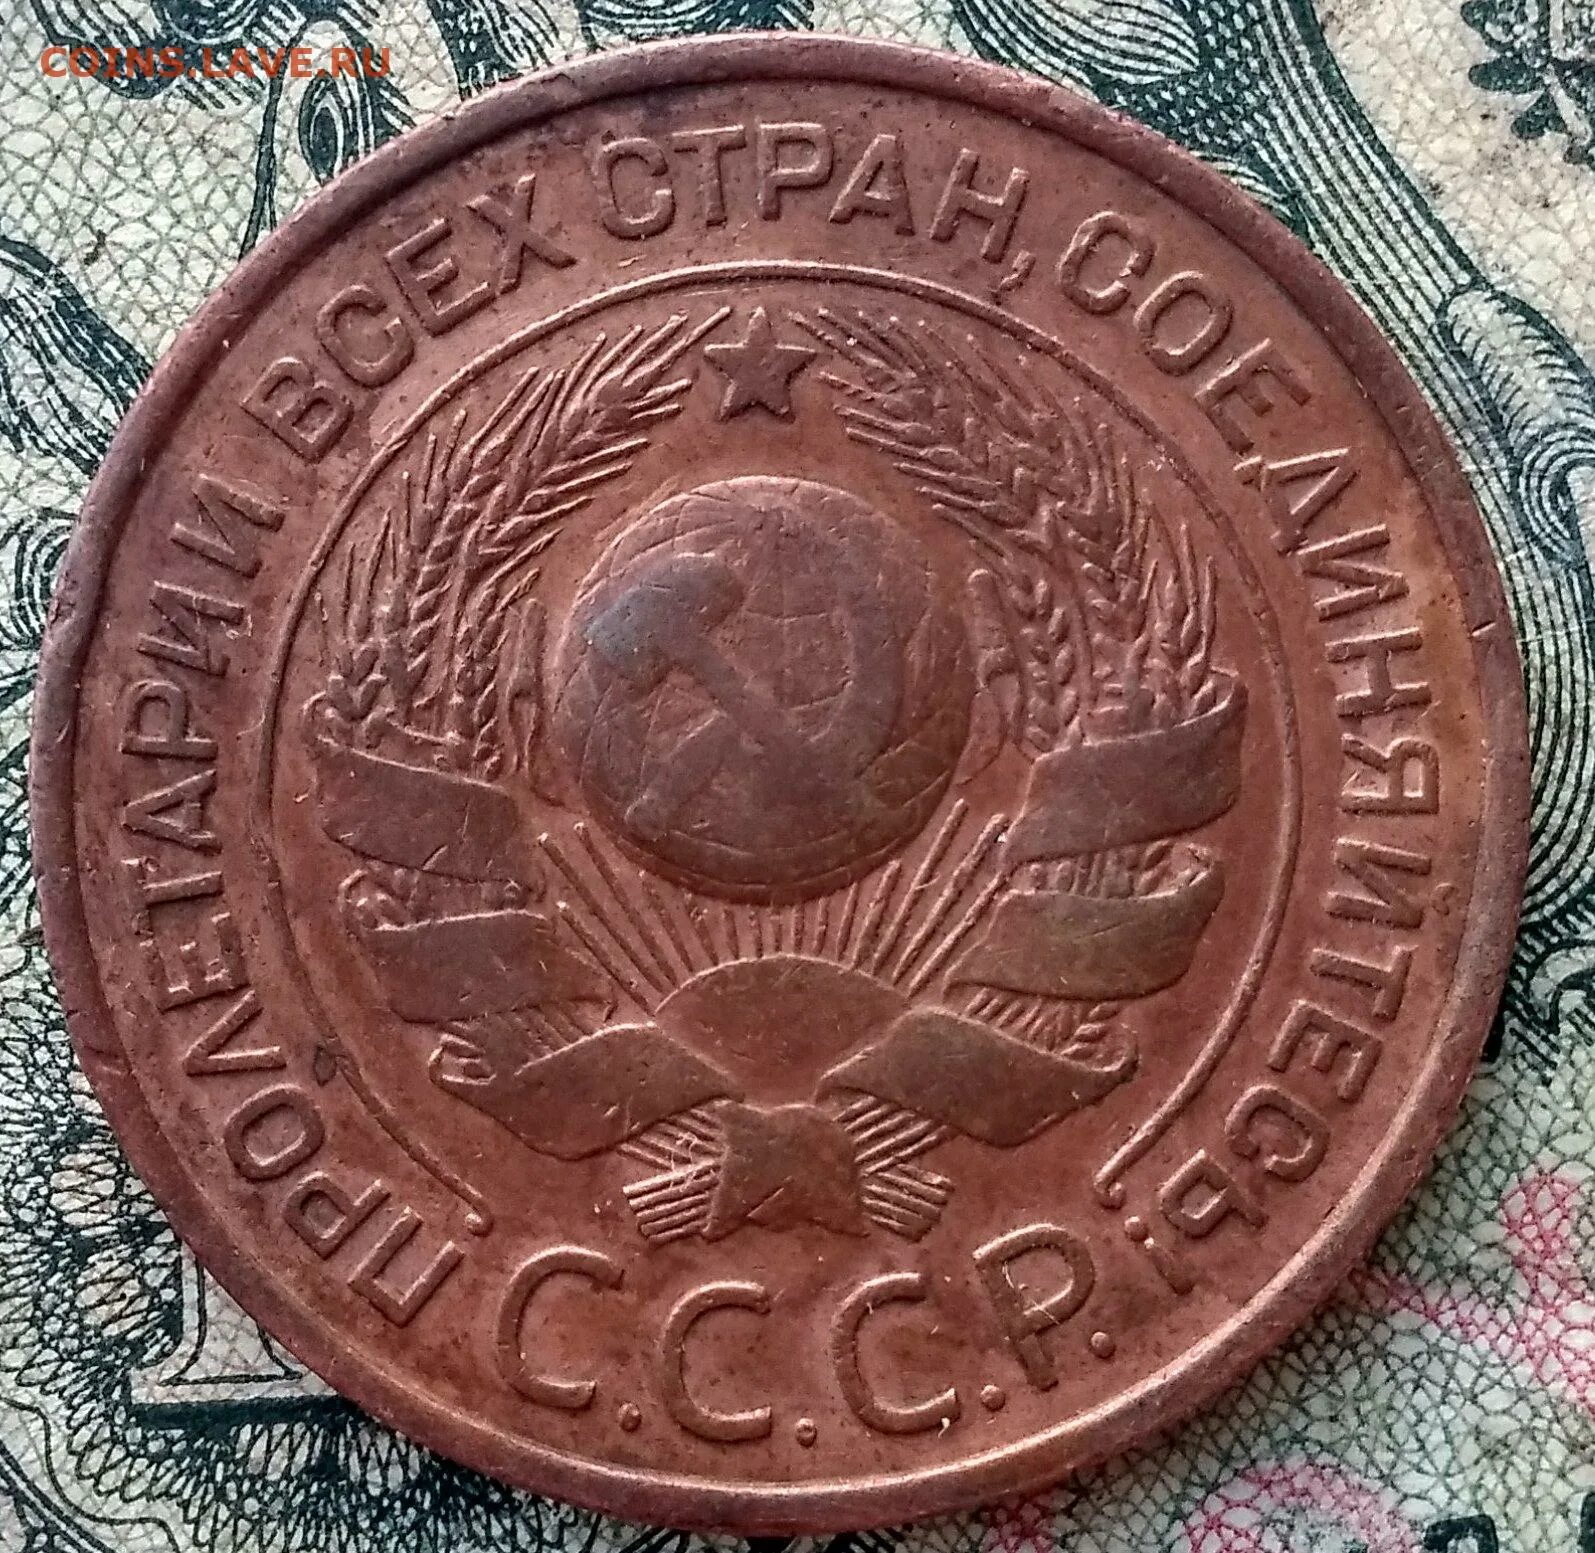 1 к 1924 г. Стоимость-50к.1924г. 333/К1924.